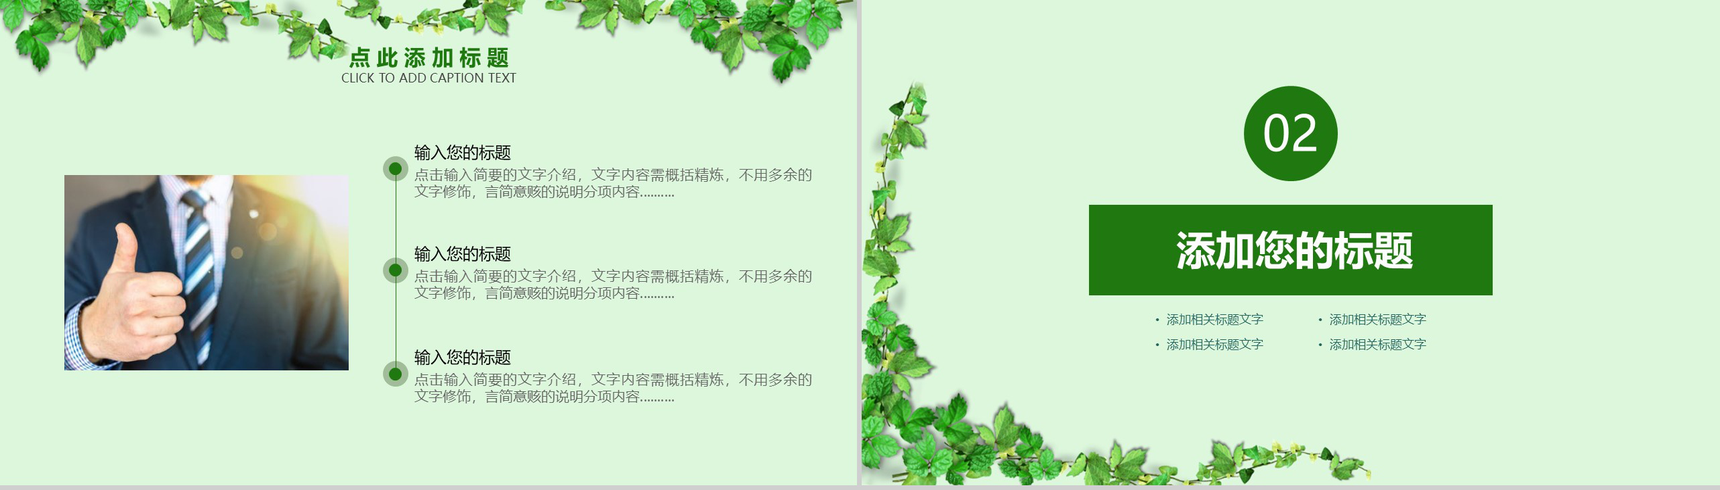 绿色植物小清新系列个人竞聘简历PPT模板-4